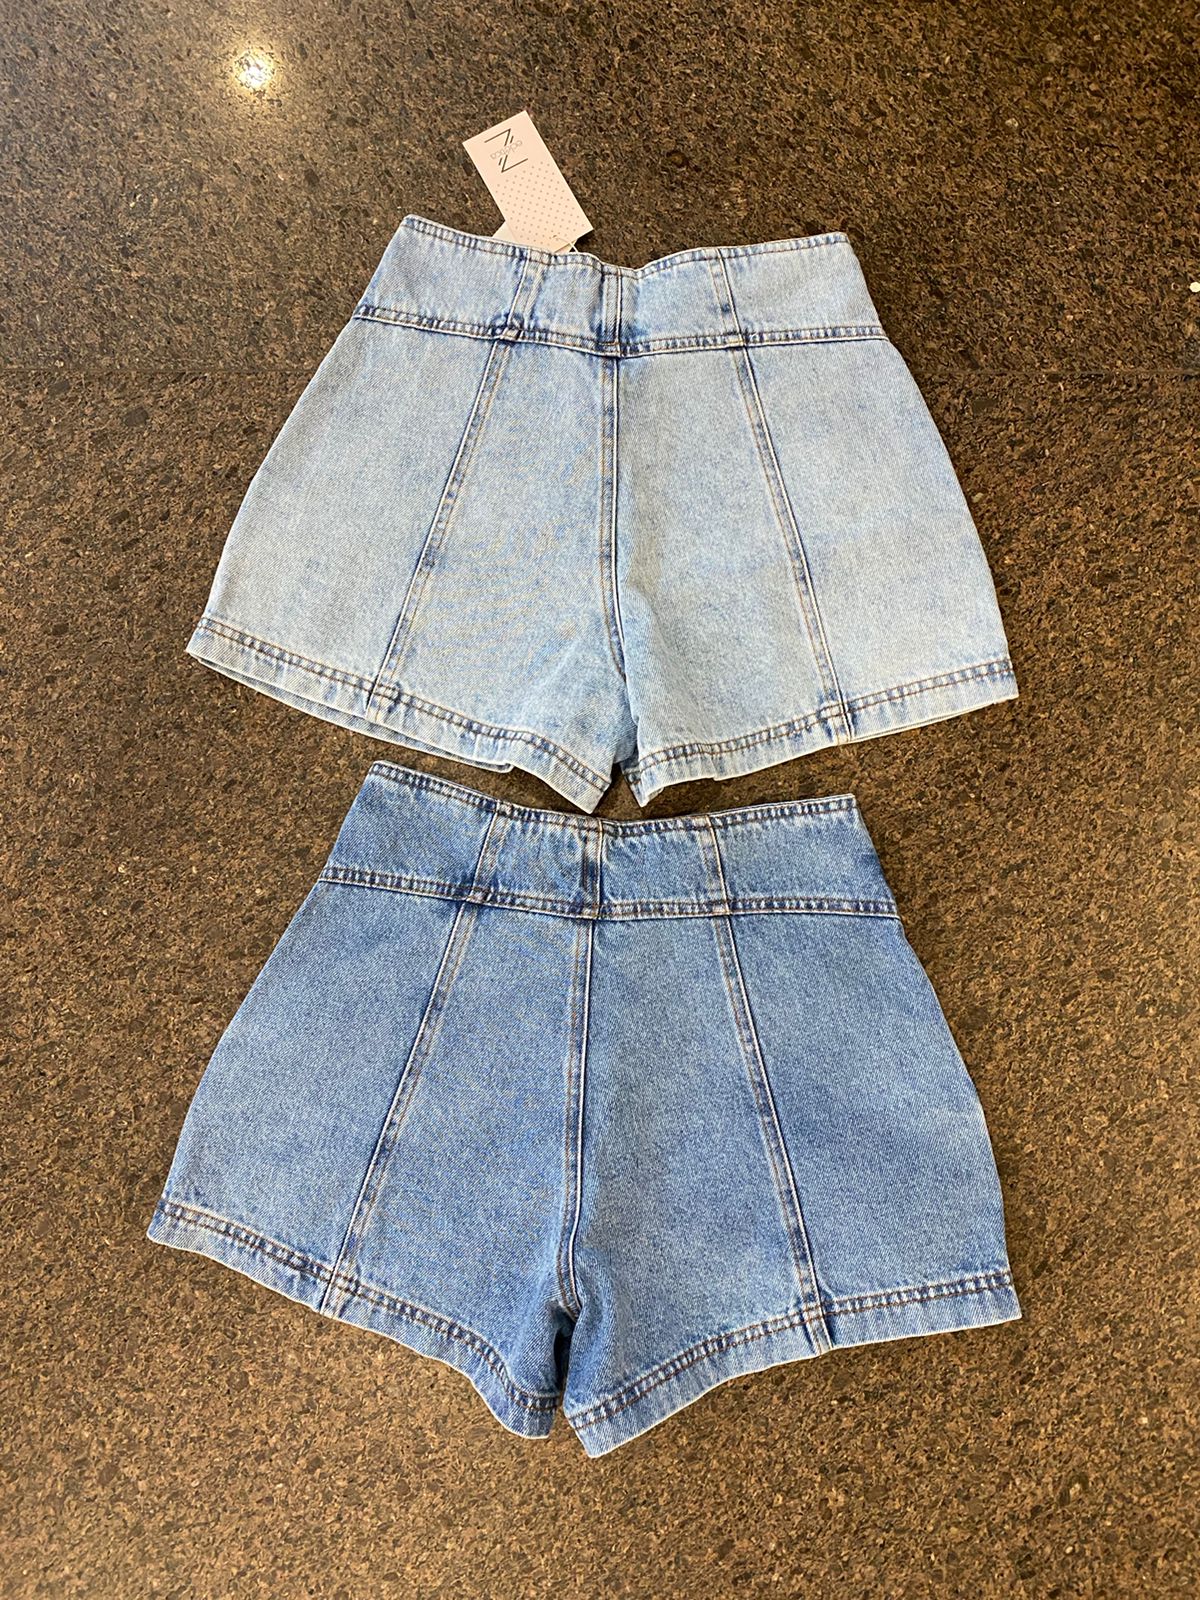 Shorts Com Pence Jeans Feminino - 05.28.0001